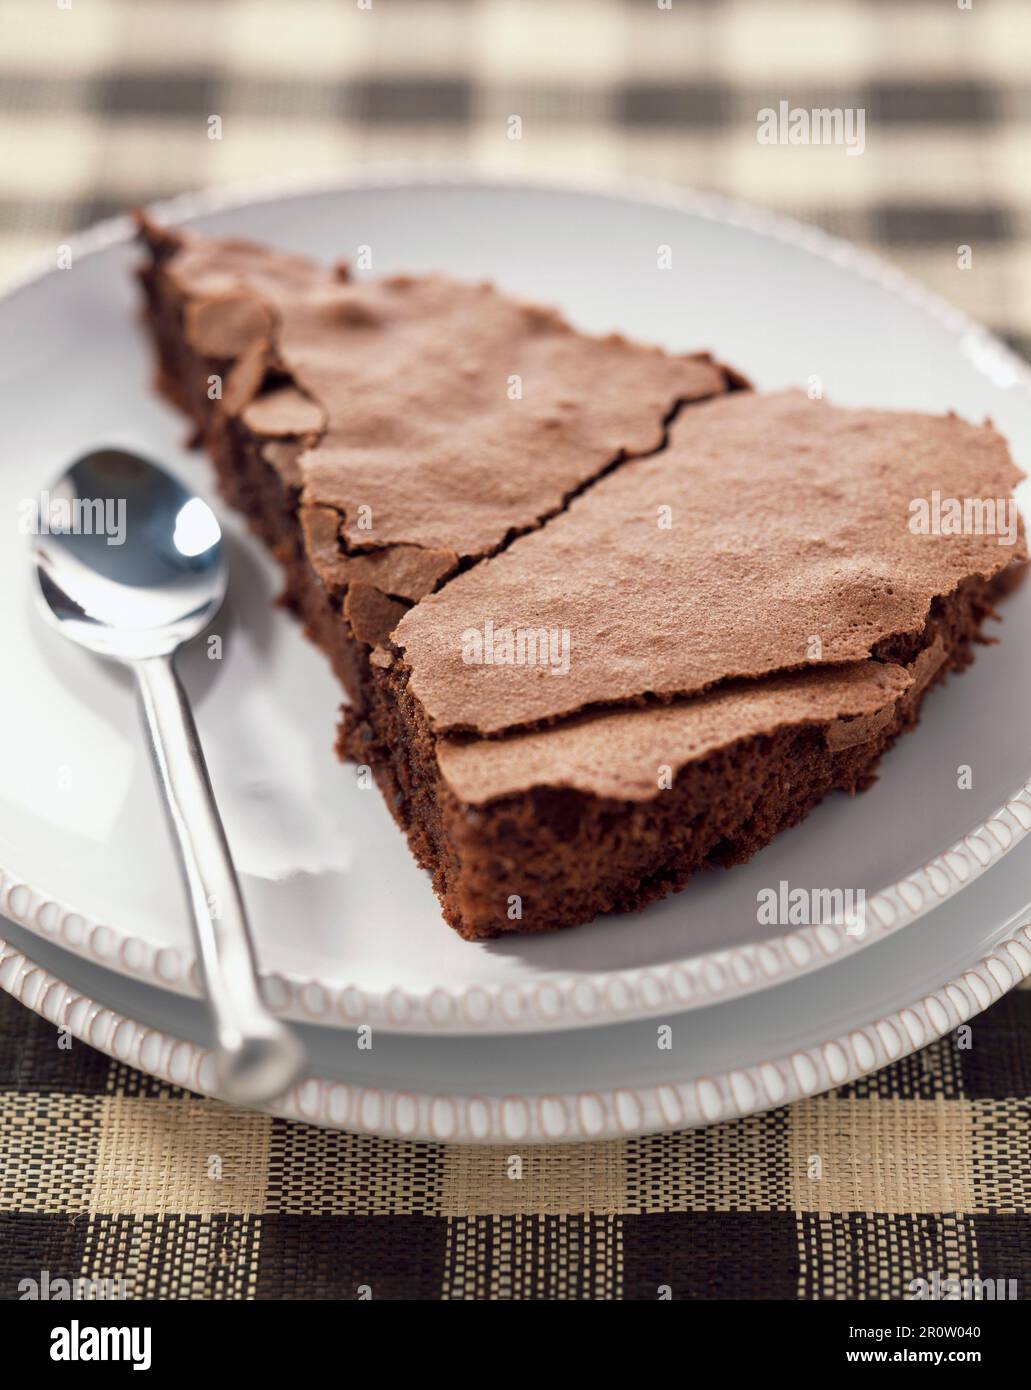 Gâteau au chocolat mamita (sujet : recette de robuchon) Banque D'Images